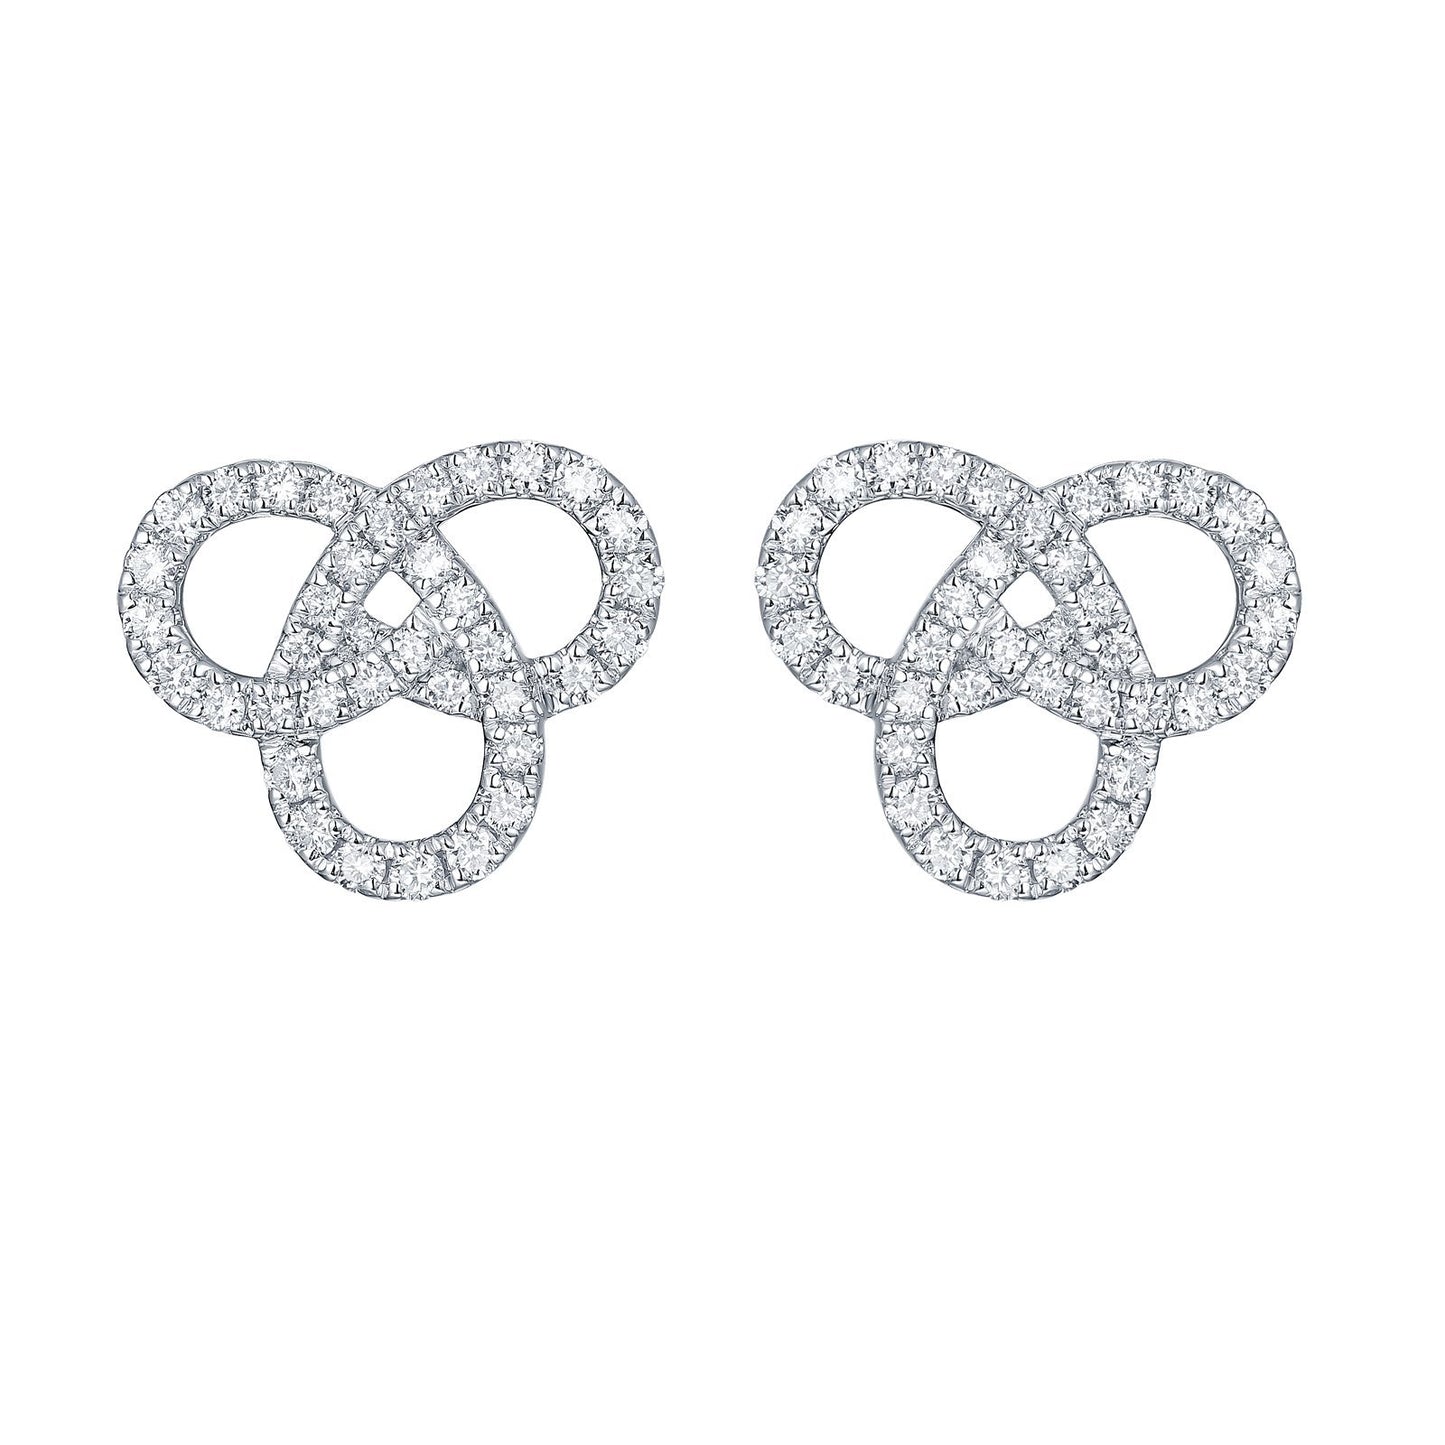 Earrings 1021 Earrings Analucia Beltran Diamonds